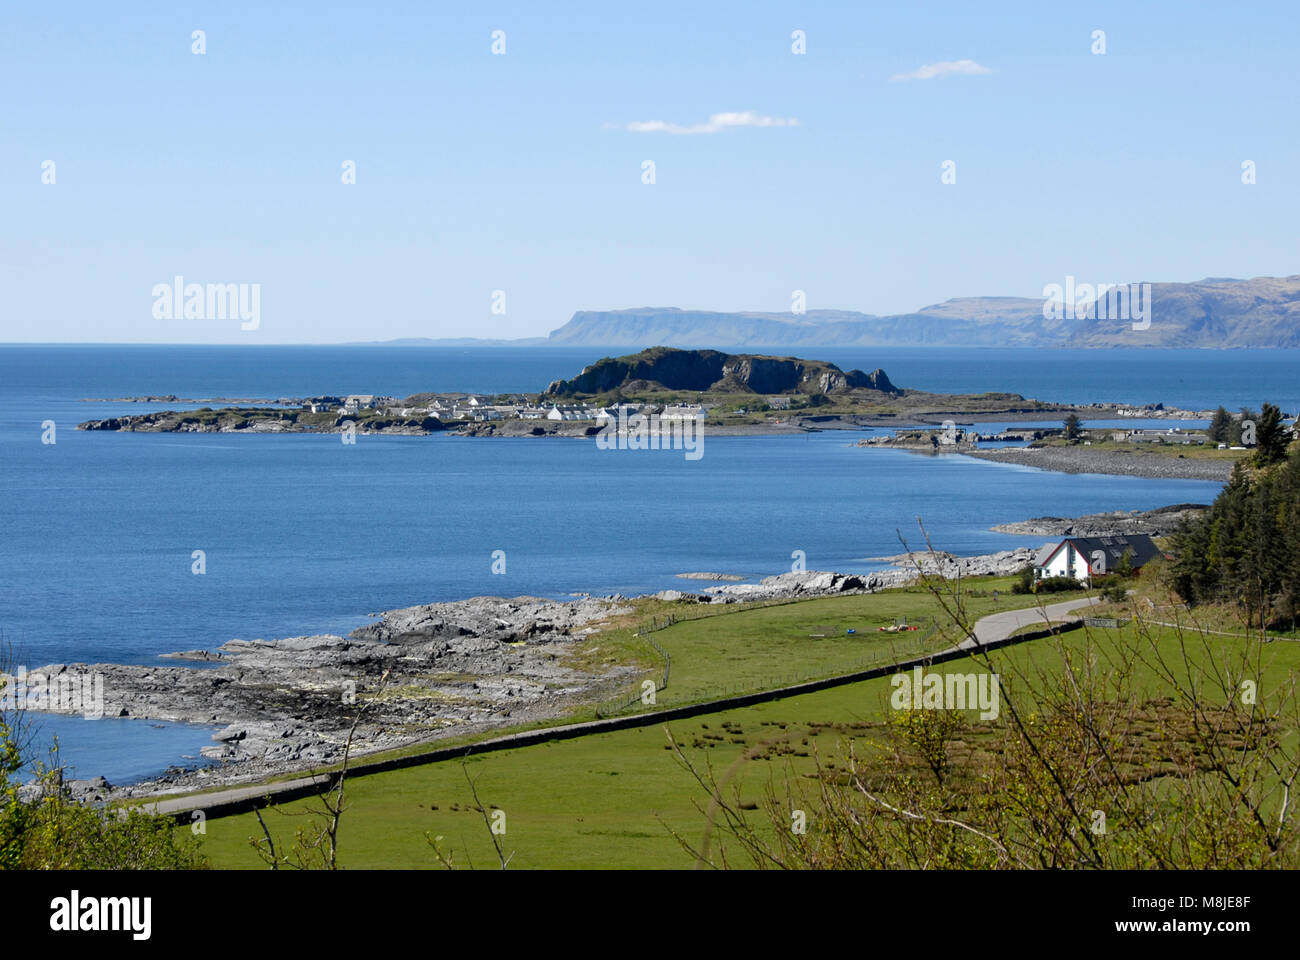 Distant view of Ellenabeich, Seil Island, West coast, Scotland Stock Photo